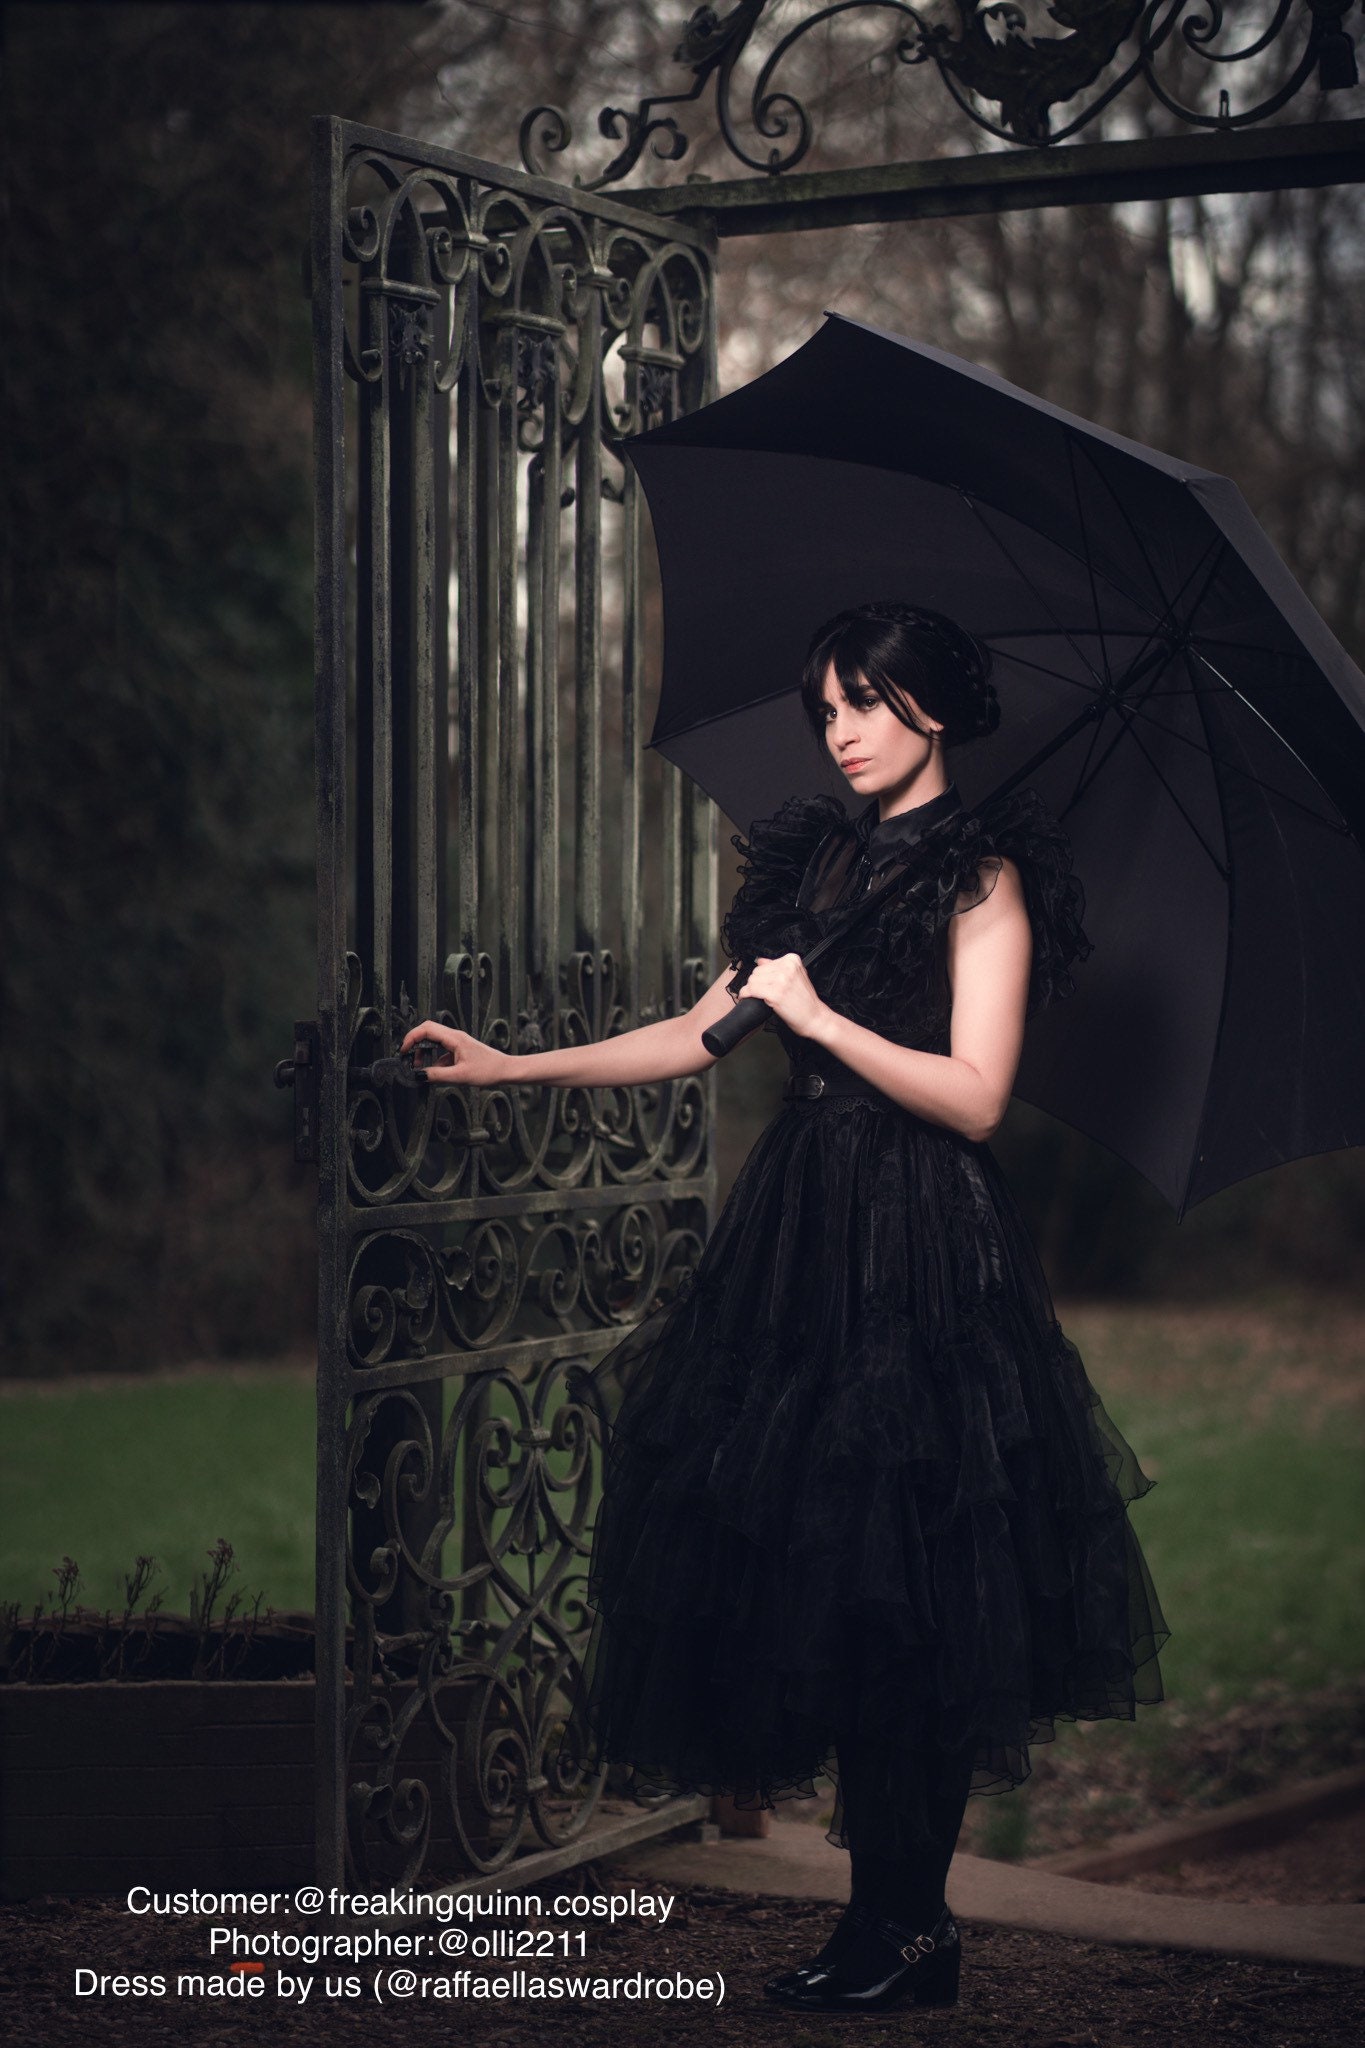 WEDNESDAY ADDAMS REPLICA Dress Wednesday Dark Dress Gothic photo photo